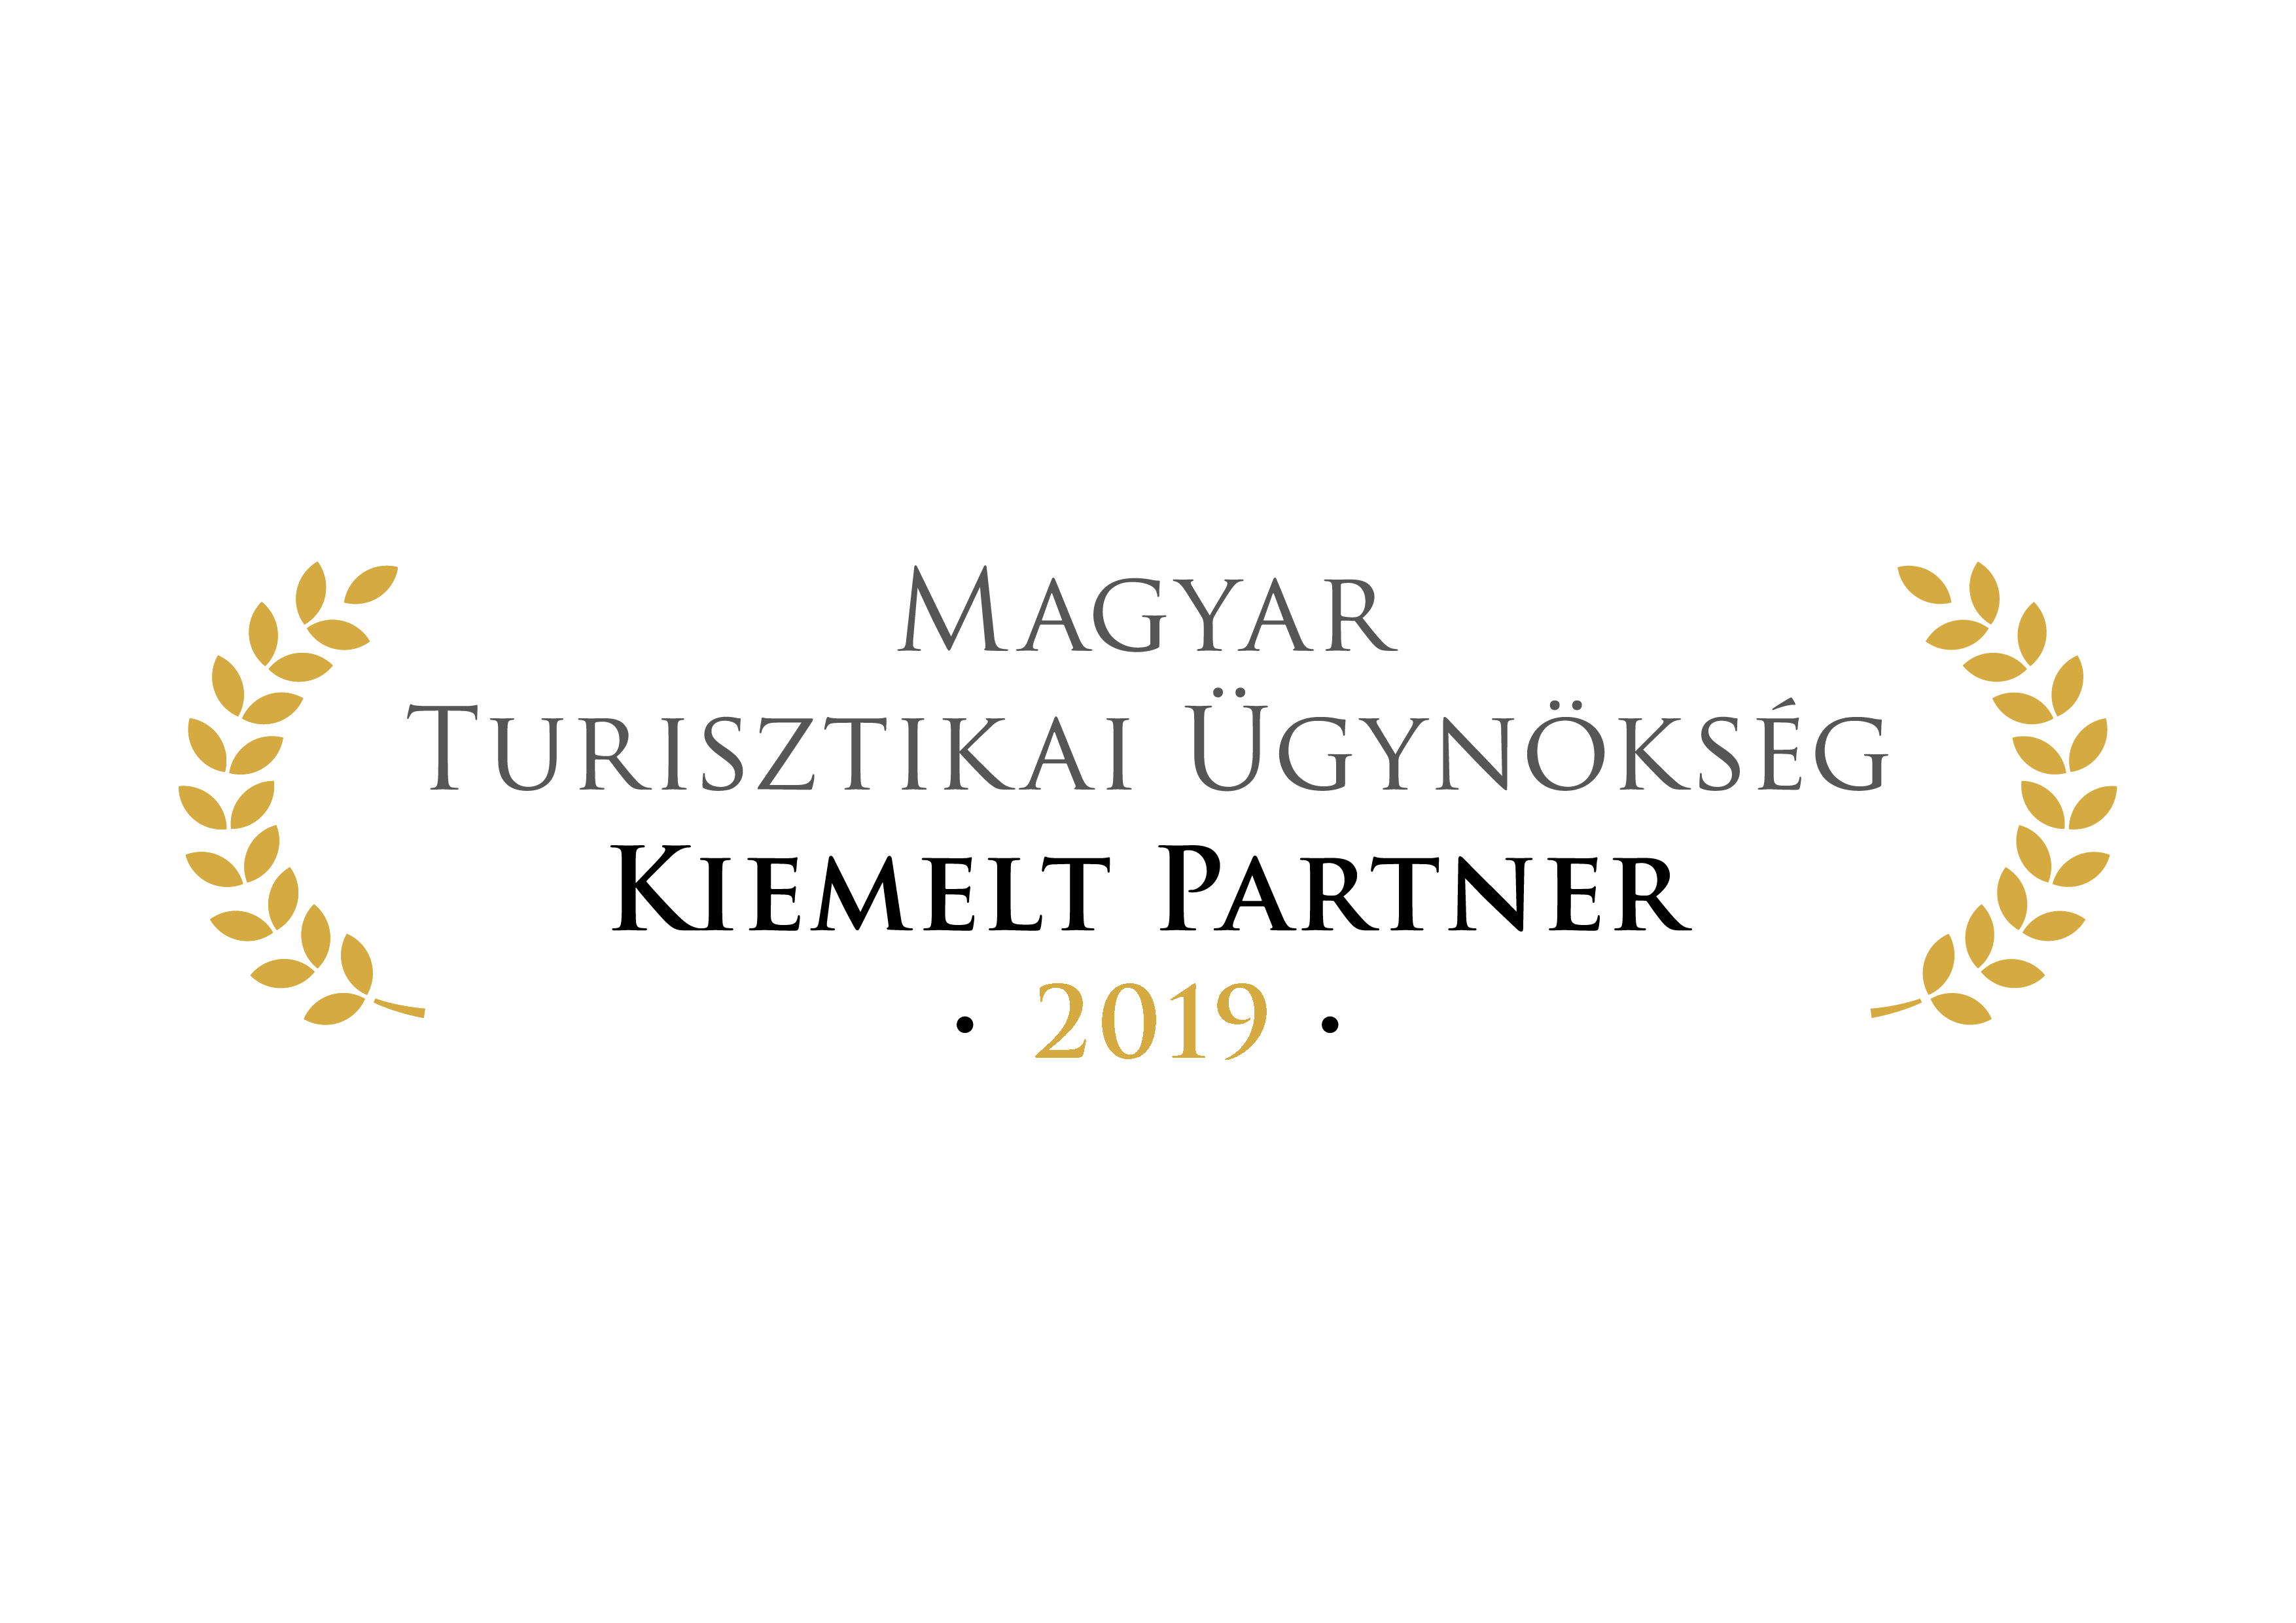 Magyar Turisztikai Ügynökség kiemelt partnere lettünk 2019-ben